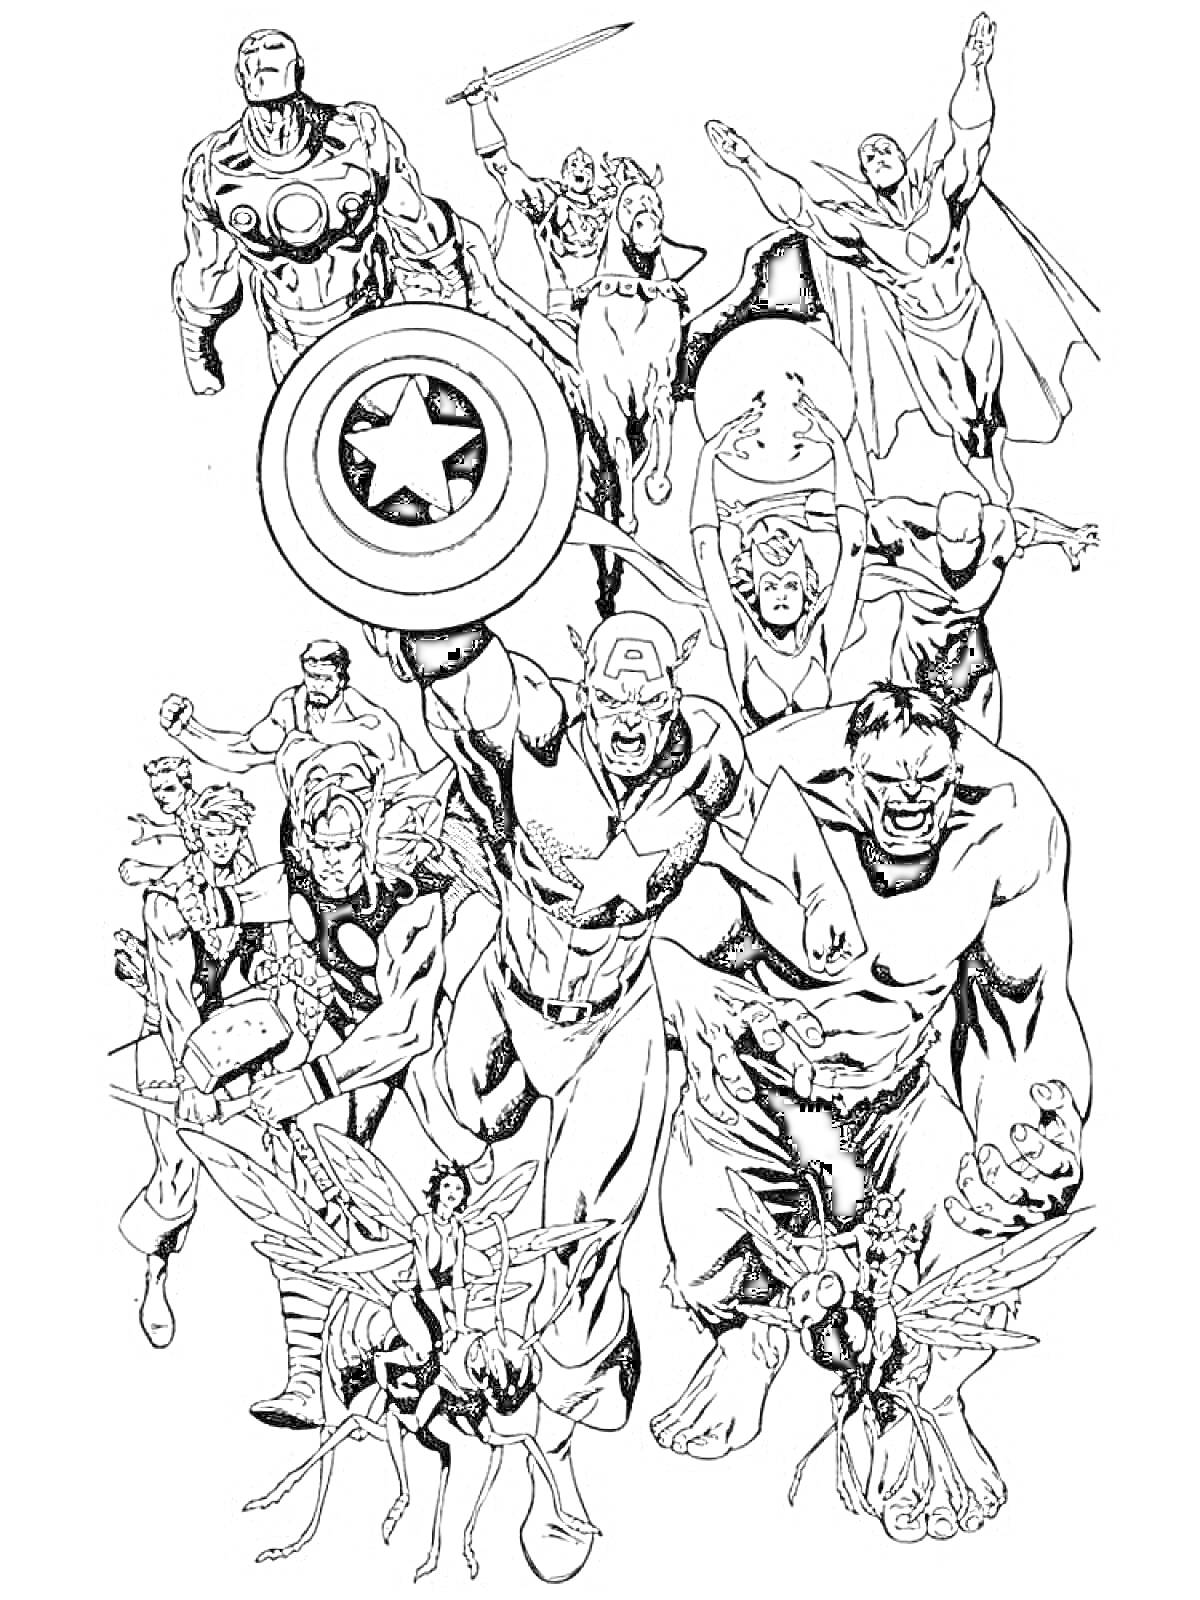 Раскраска Герои Марвел с Капитаном Америкой, Железным Человеком, Тором, Халком, Человеком-Муравьем, Осы, Соколом и другими героями